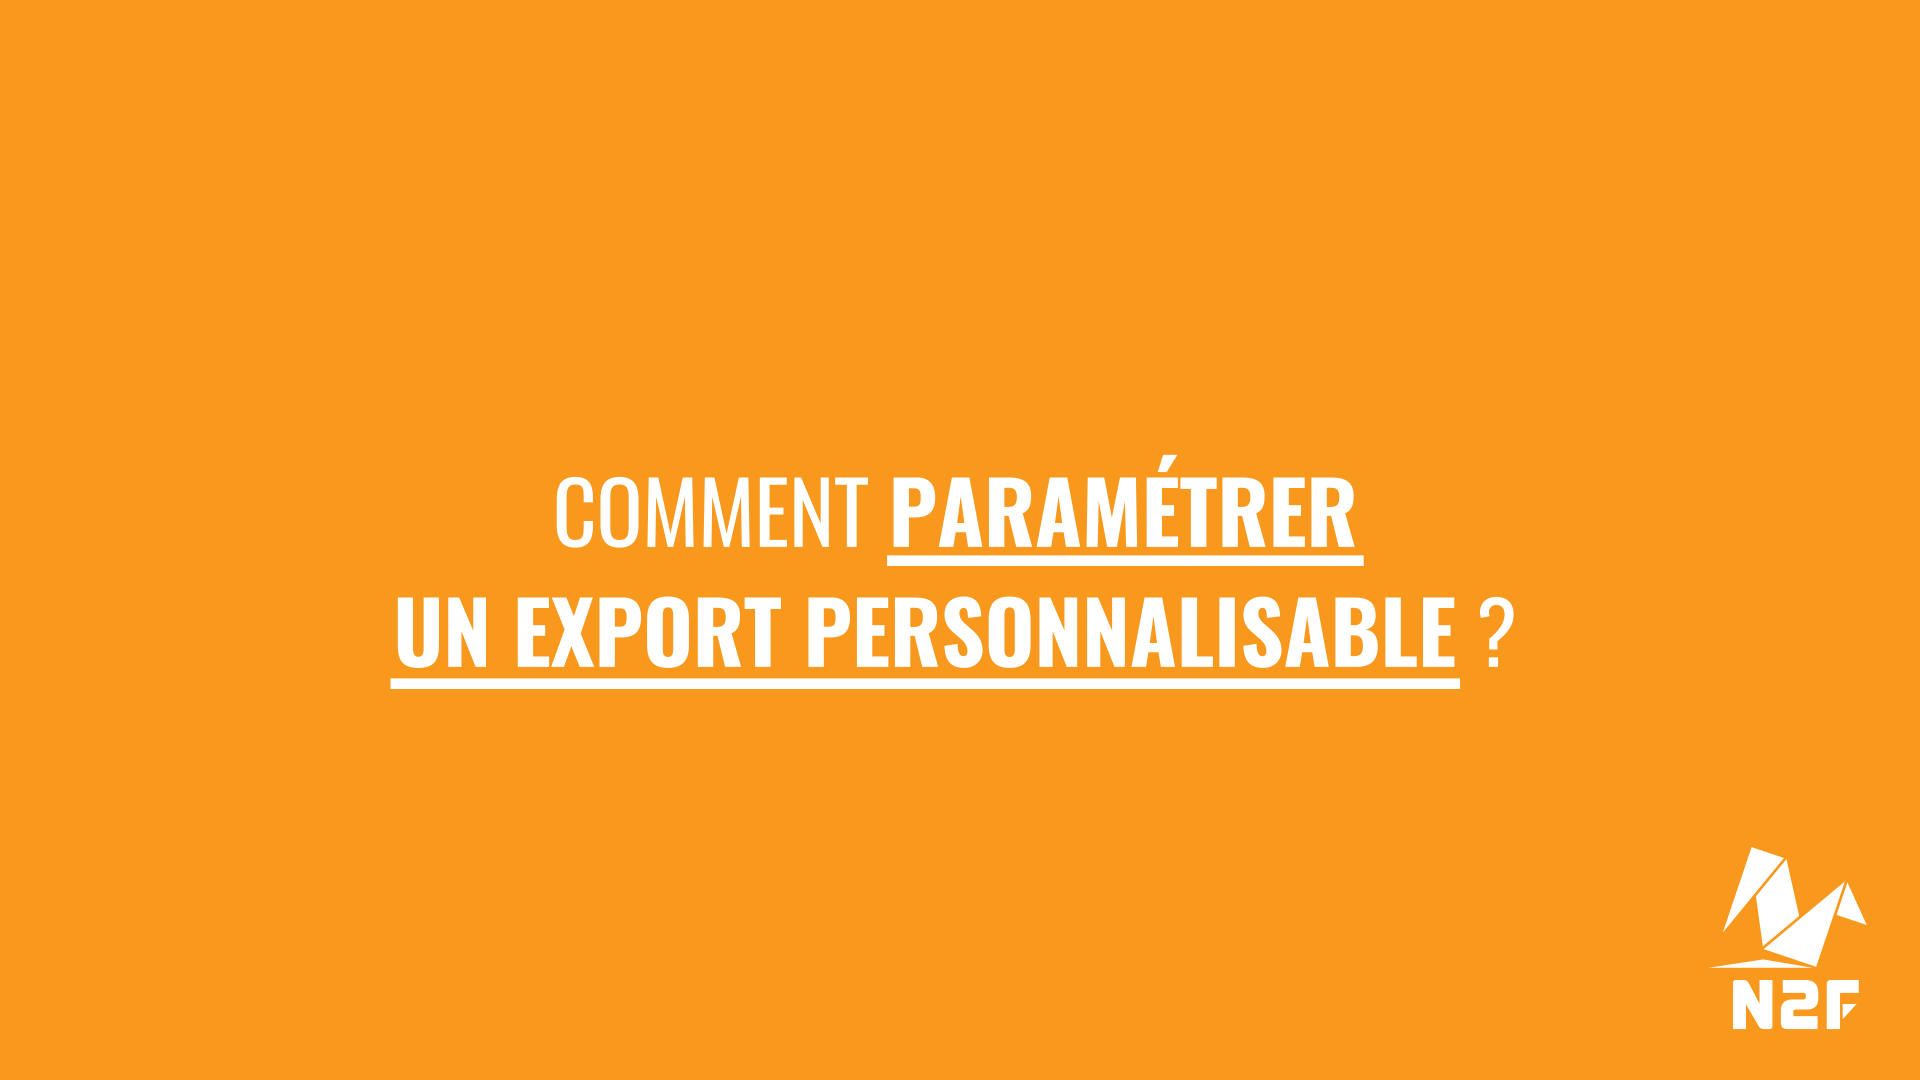 6 comment_parametrer_export_personnalisable